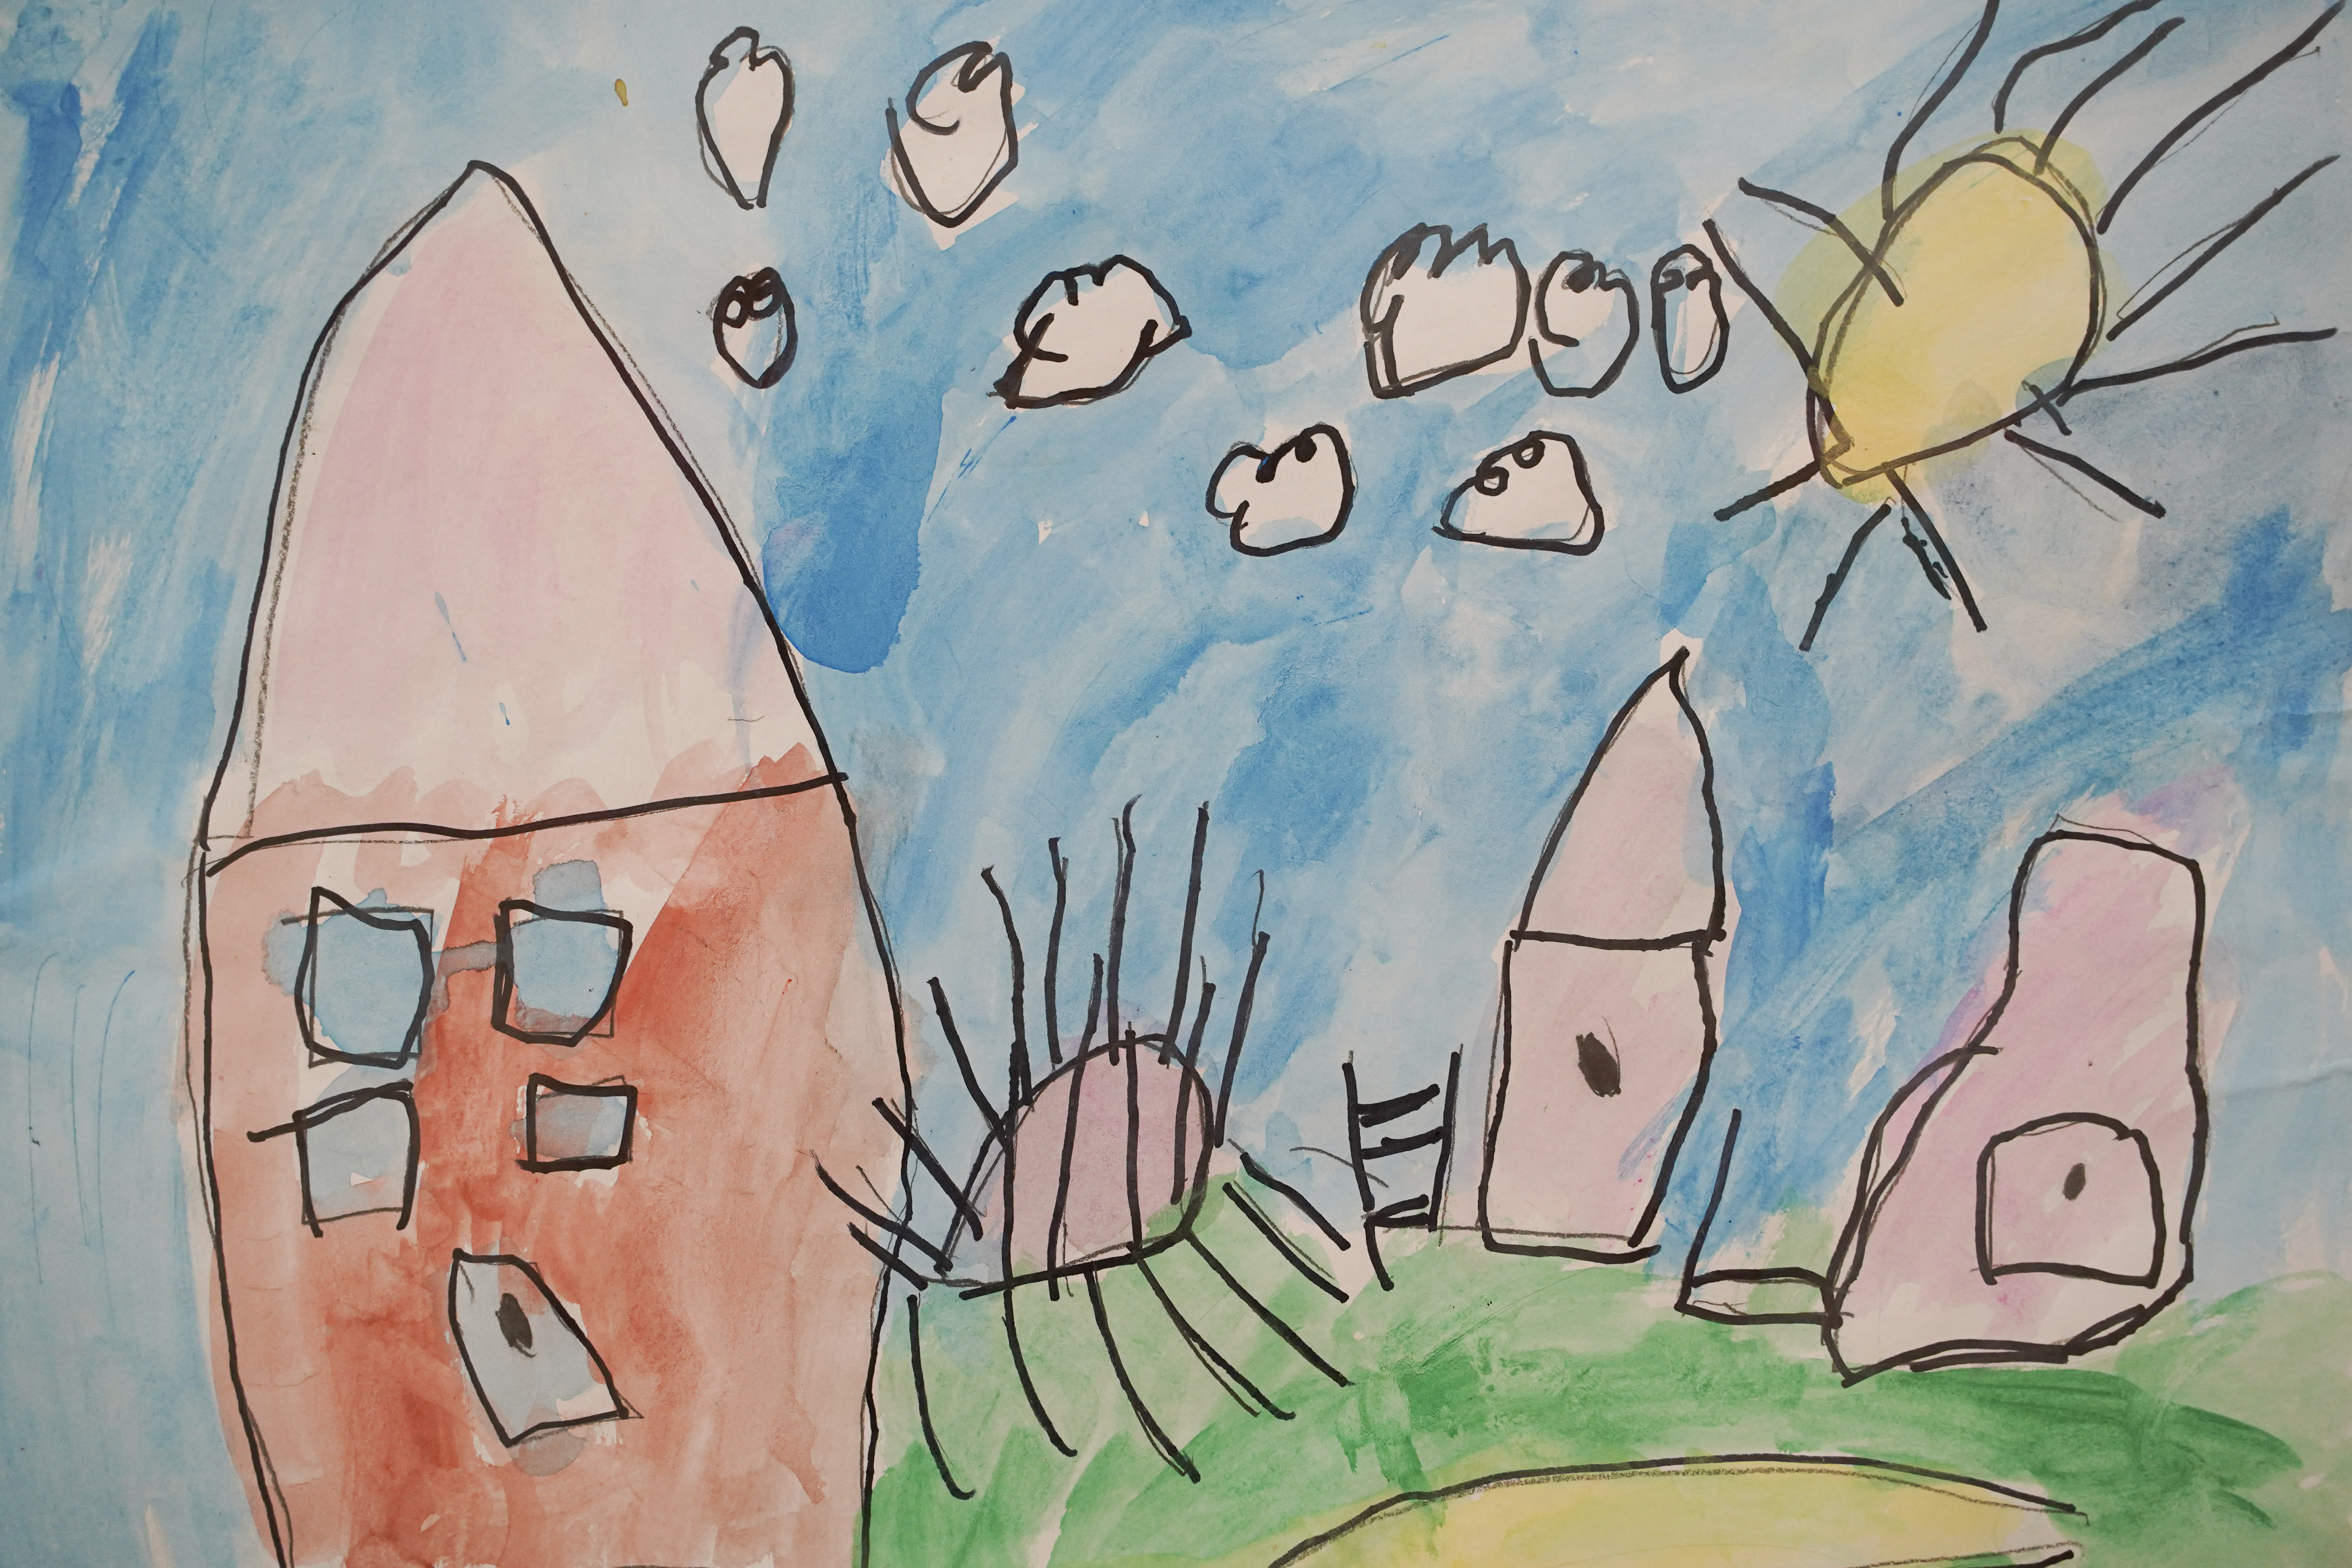 Image of a primary school student's work in ArtStart